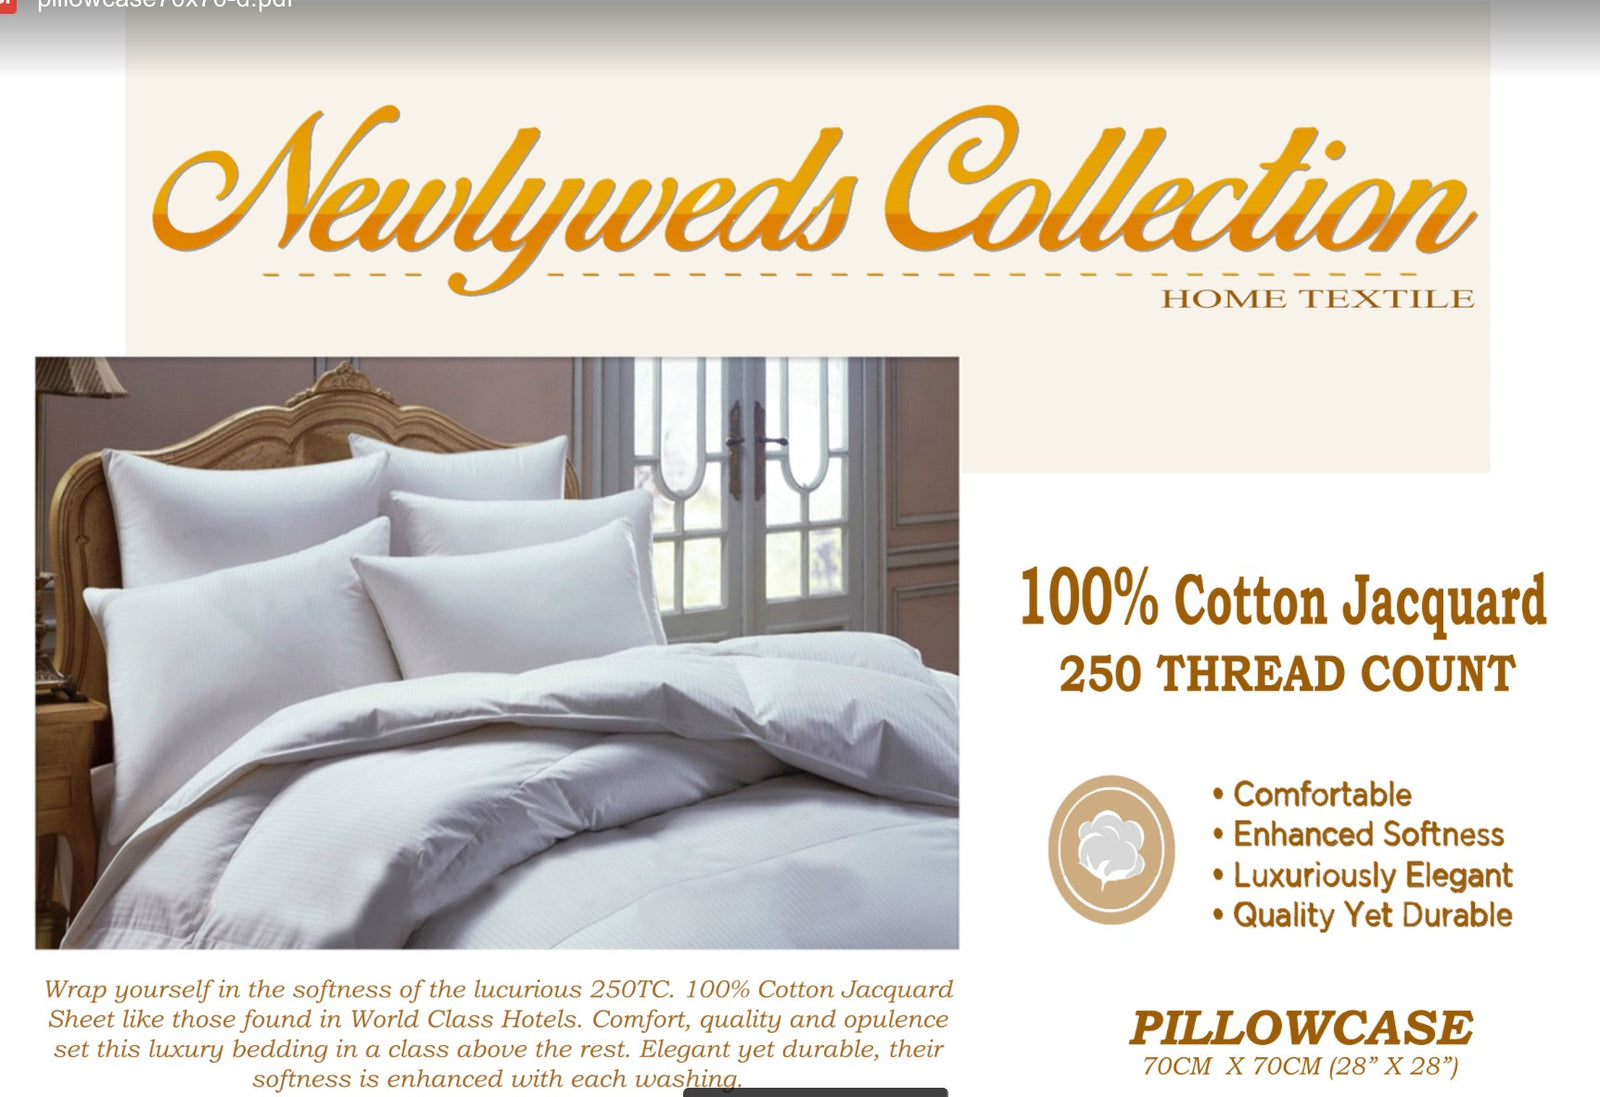 Hotel Collection Pillowcase